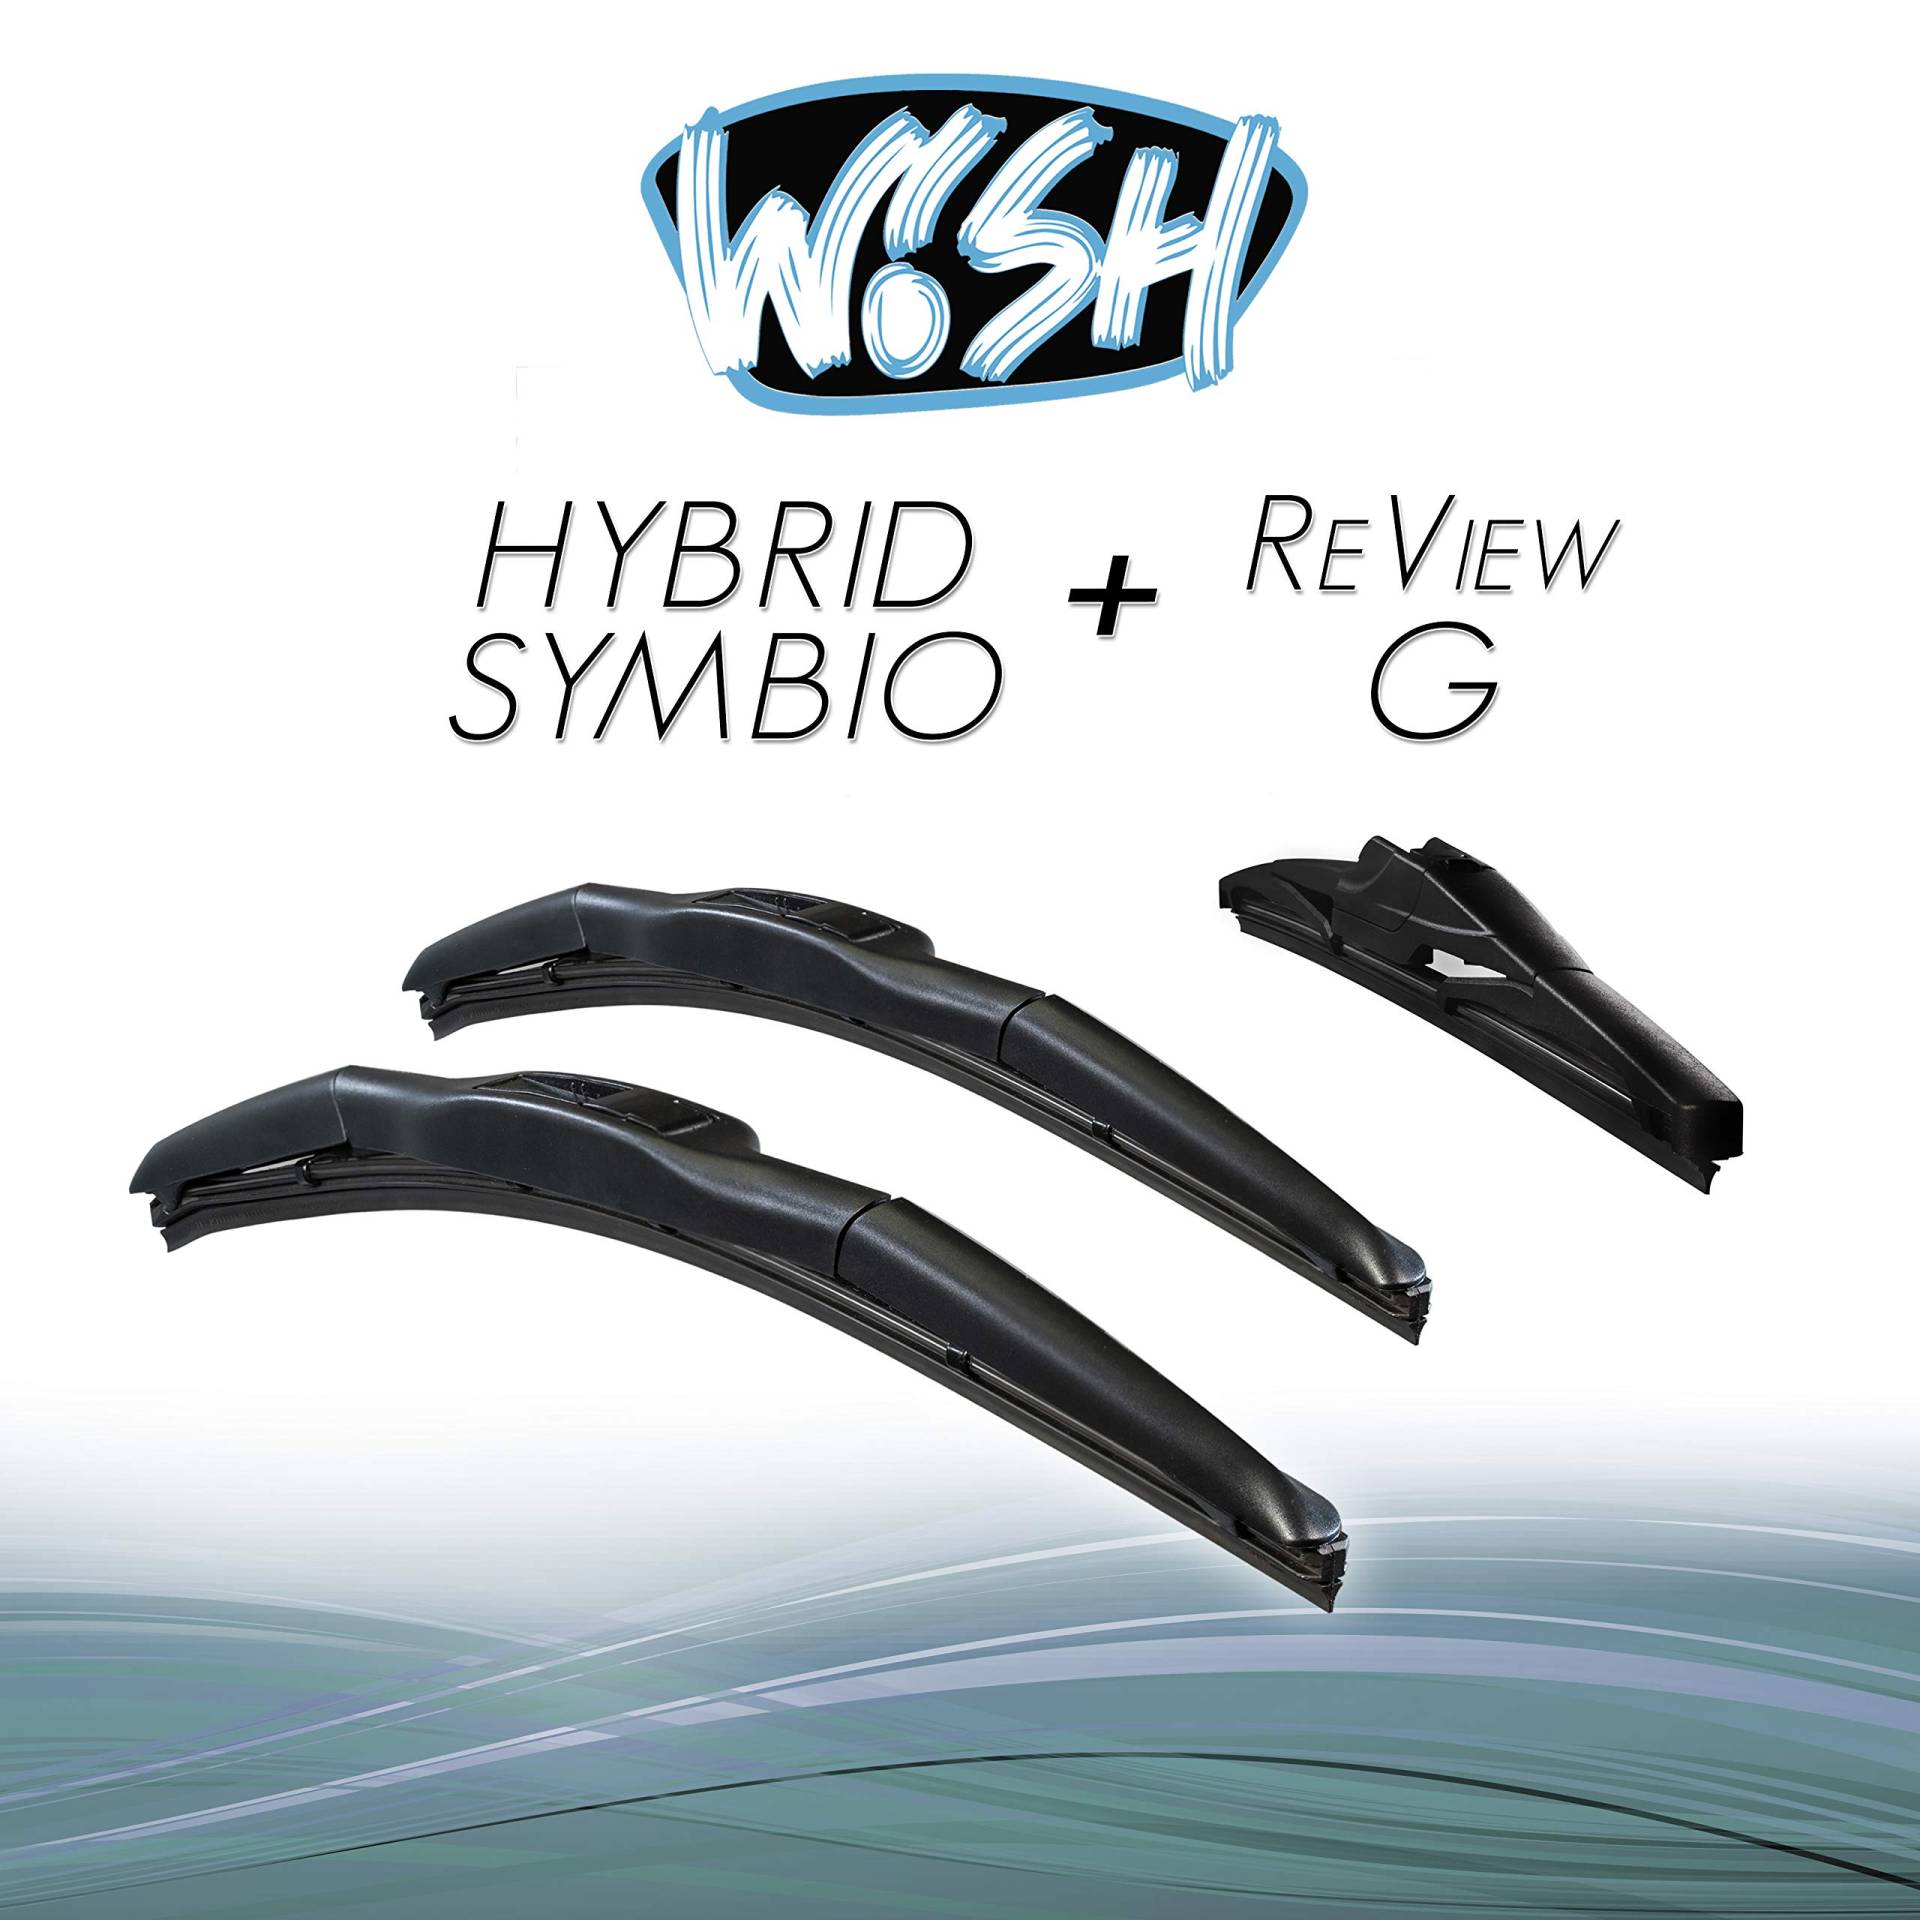 Wish® Hybrid Symbio Satz Front + Heck Scheibenwischer Länge: 24" 600mm / 21" 530mm / 10" 250mm Wischblätter Vorne und Hinten Hybrid-Scheibenwischer + Review G HS24.21.10RG von Wish